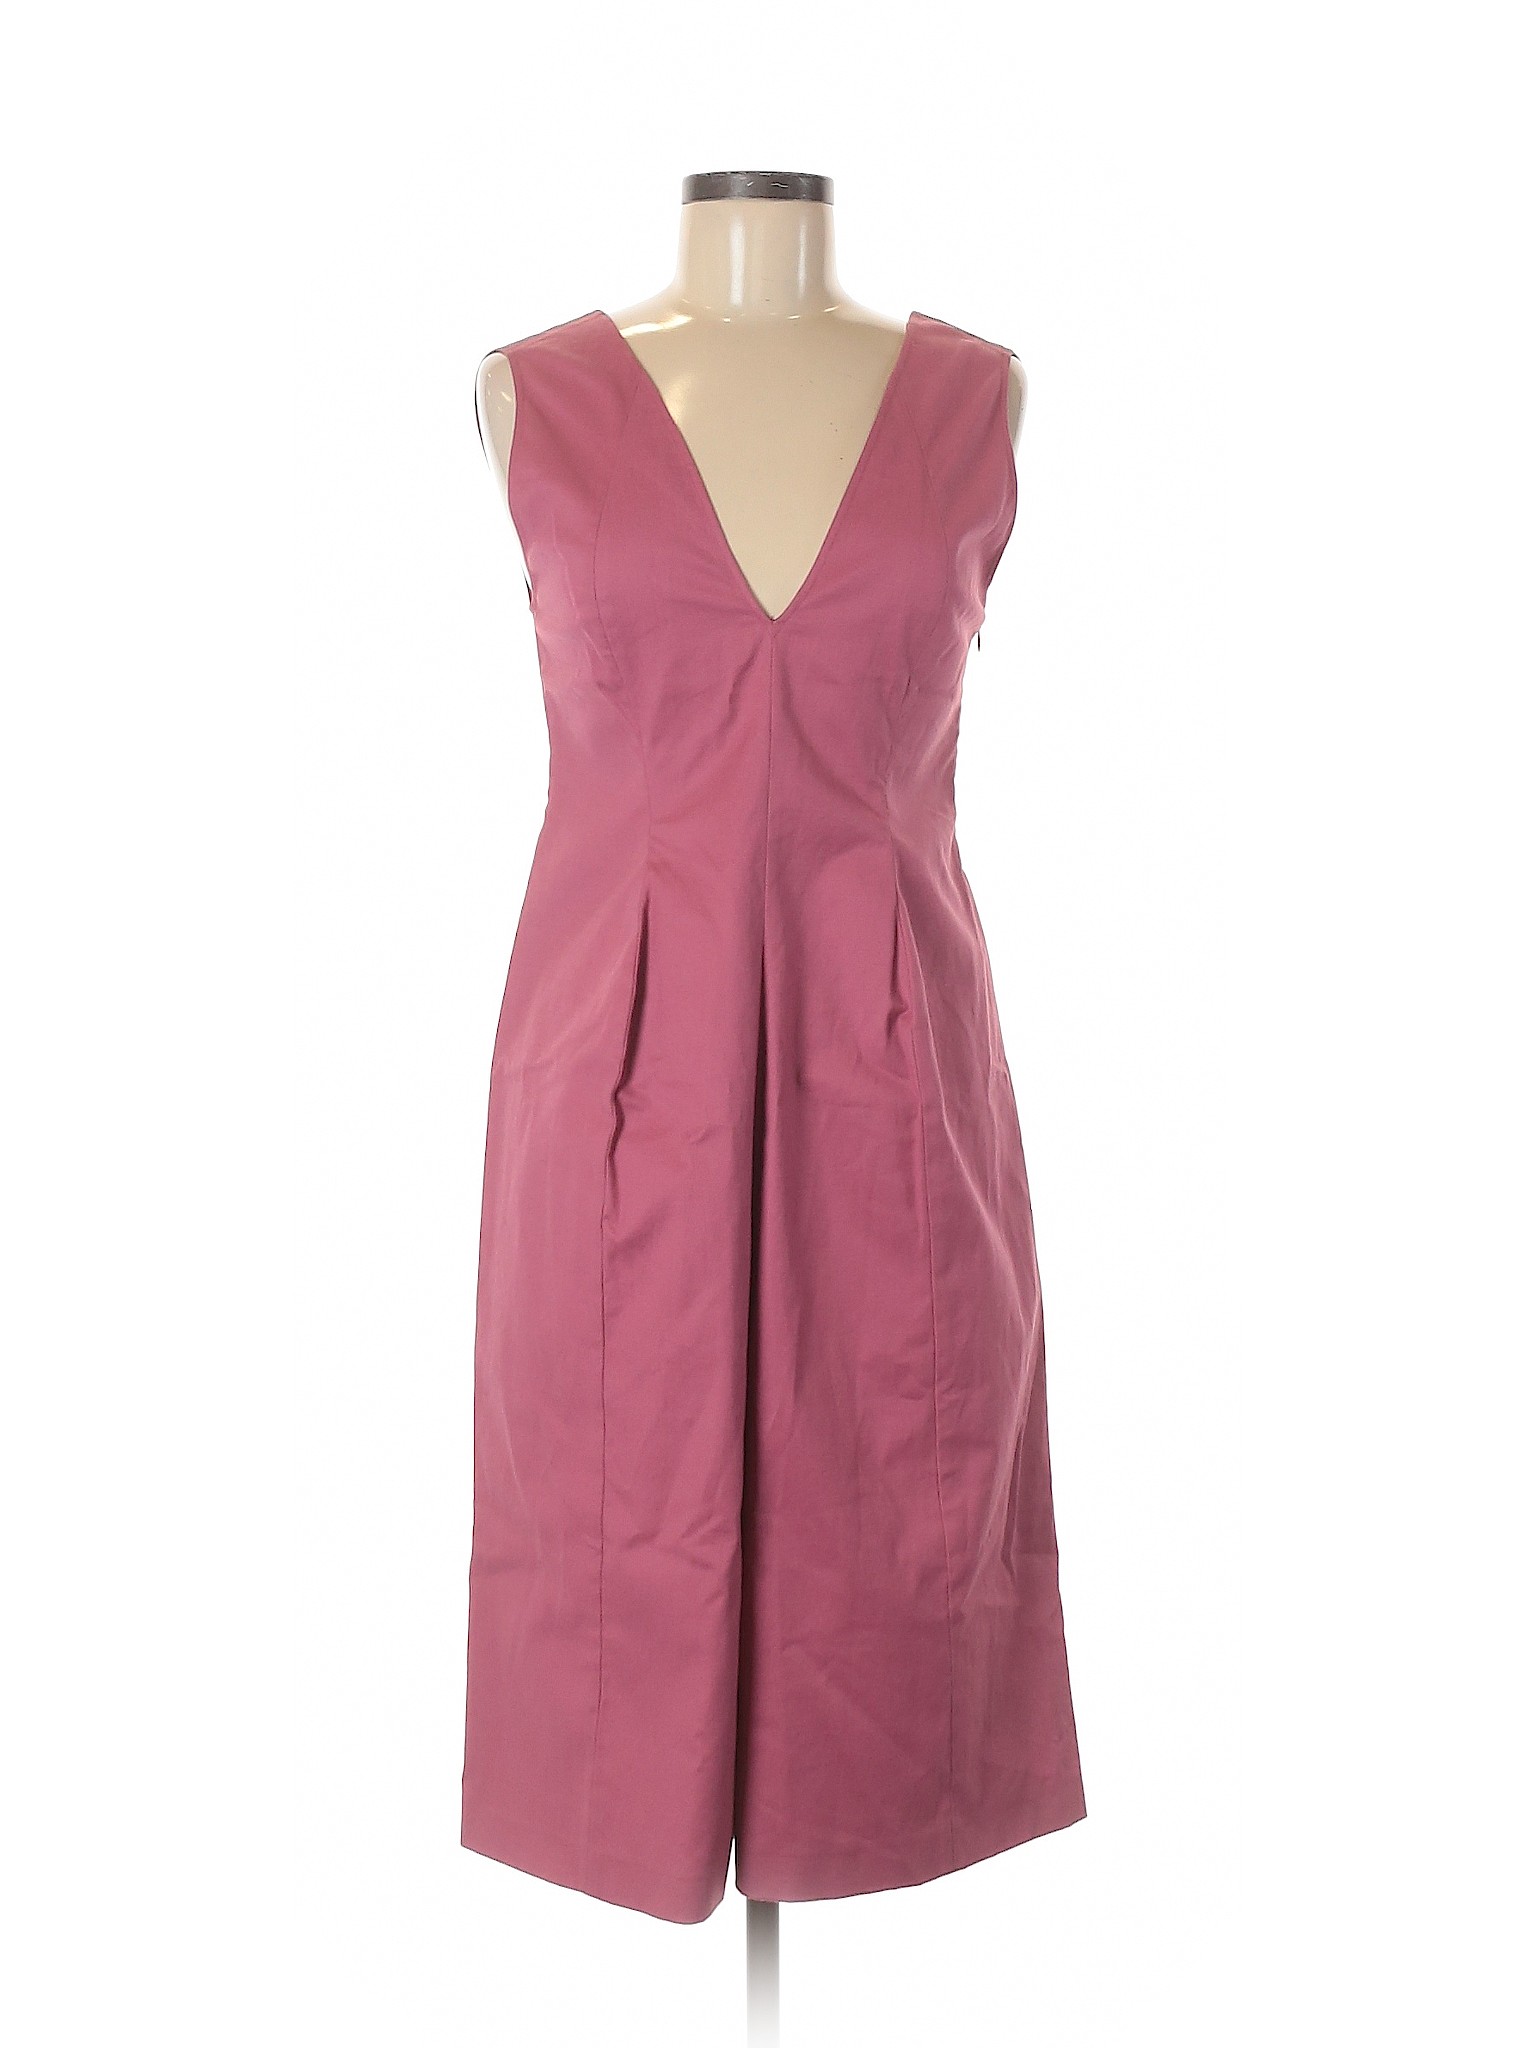 Jil Sander Women Pink Casual Dress 36 eur | eBay